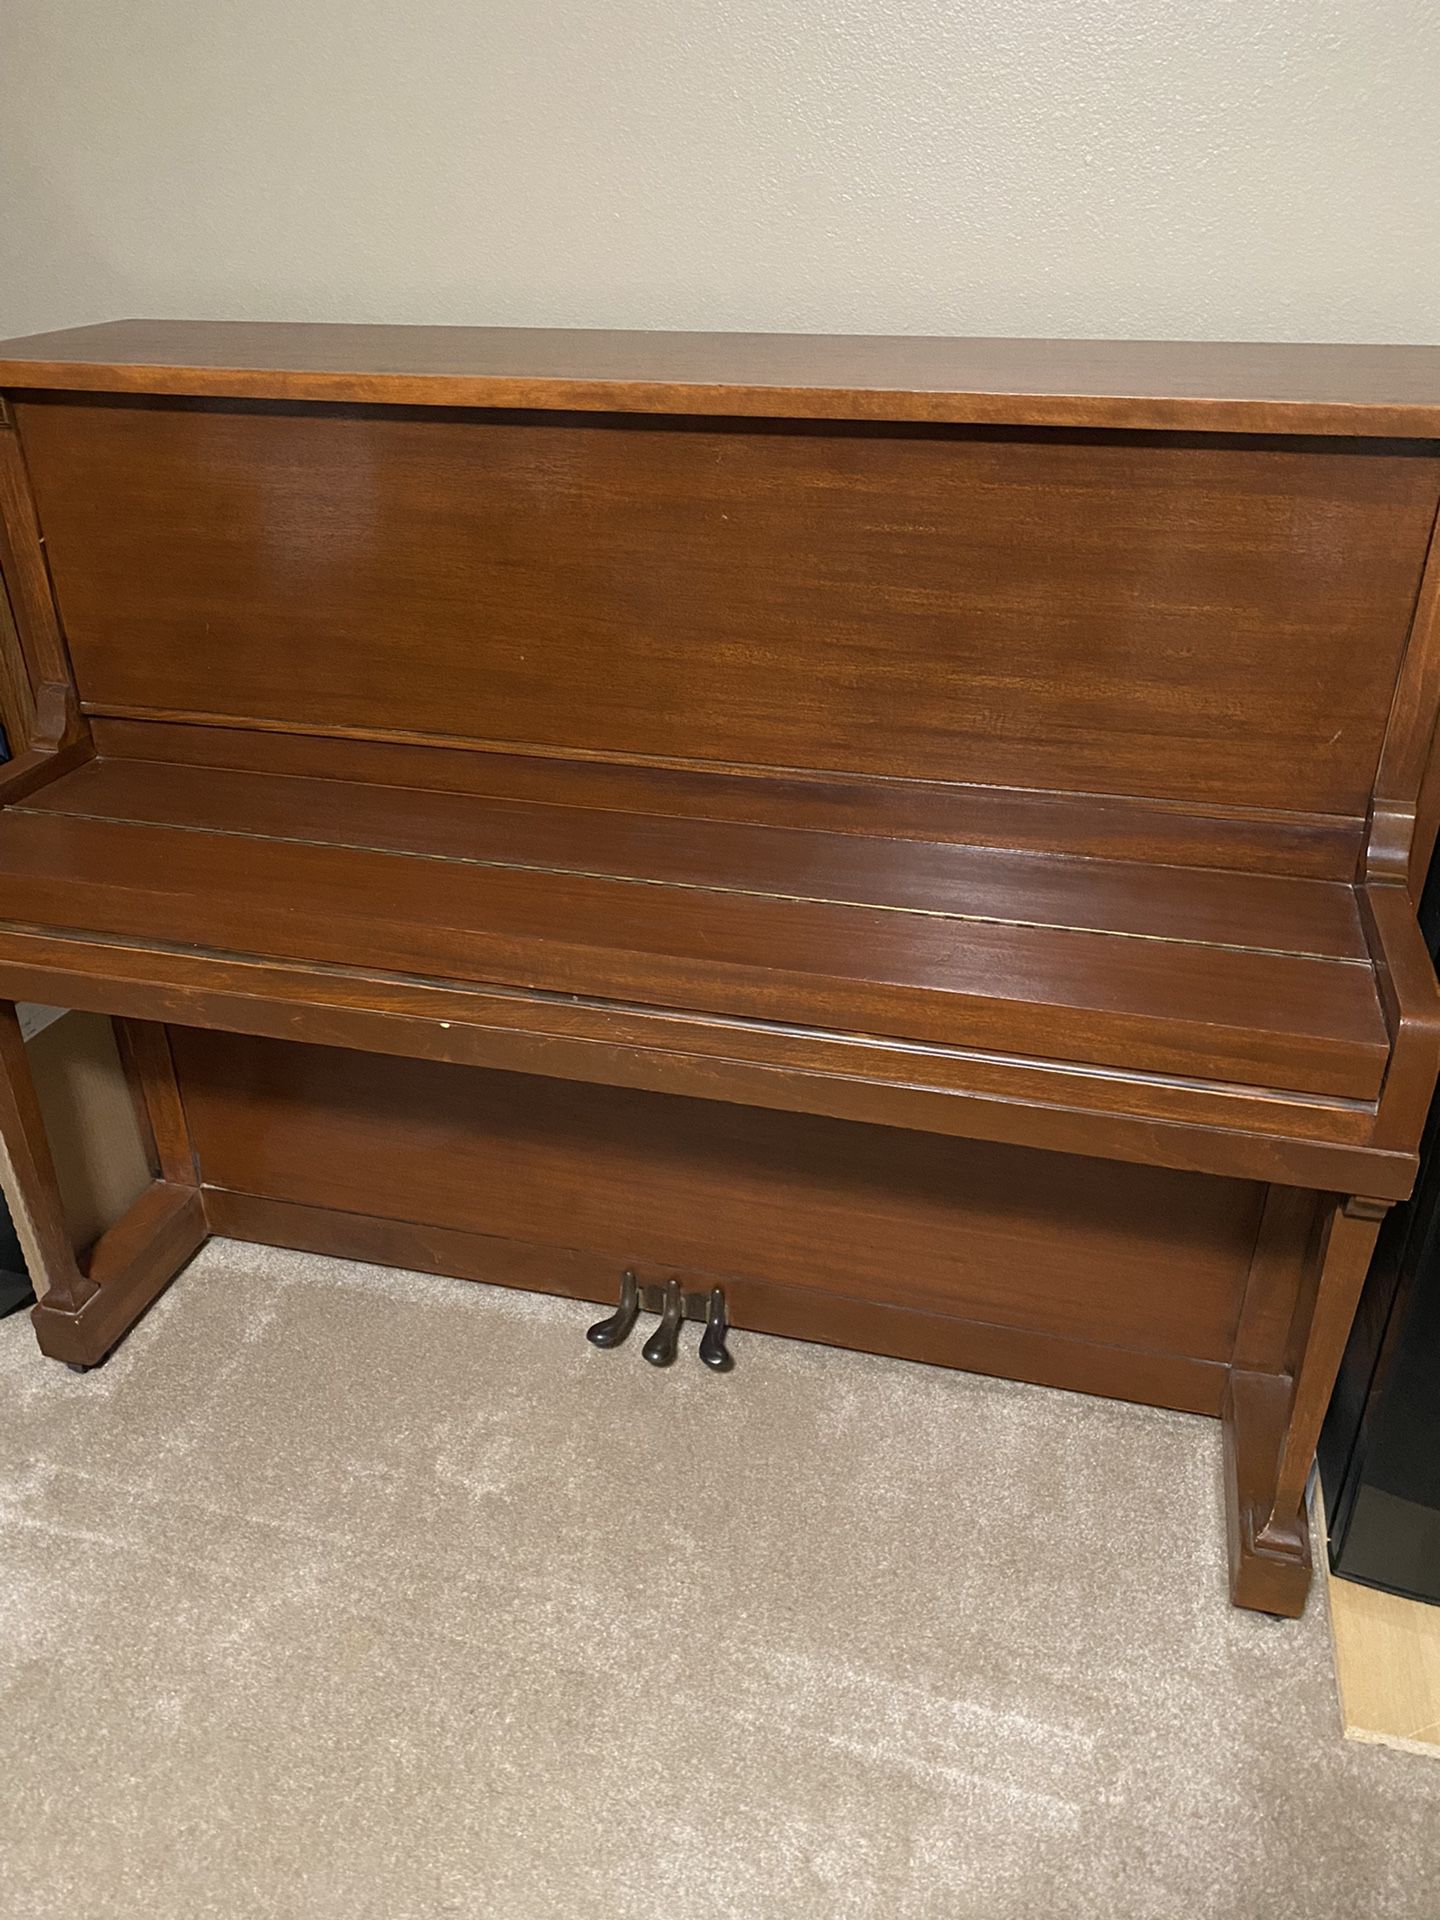 Free Baldwin Piano